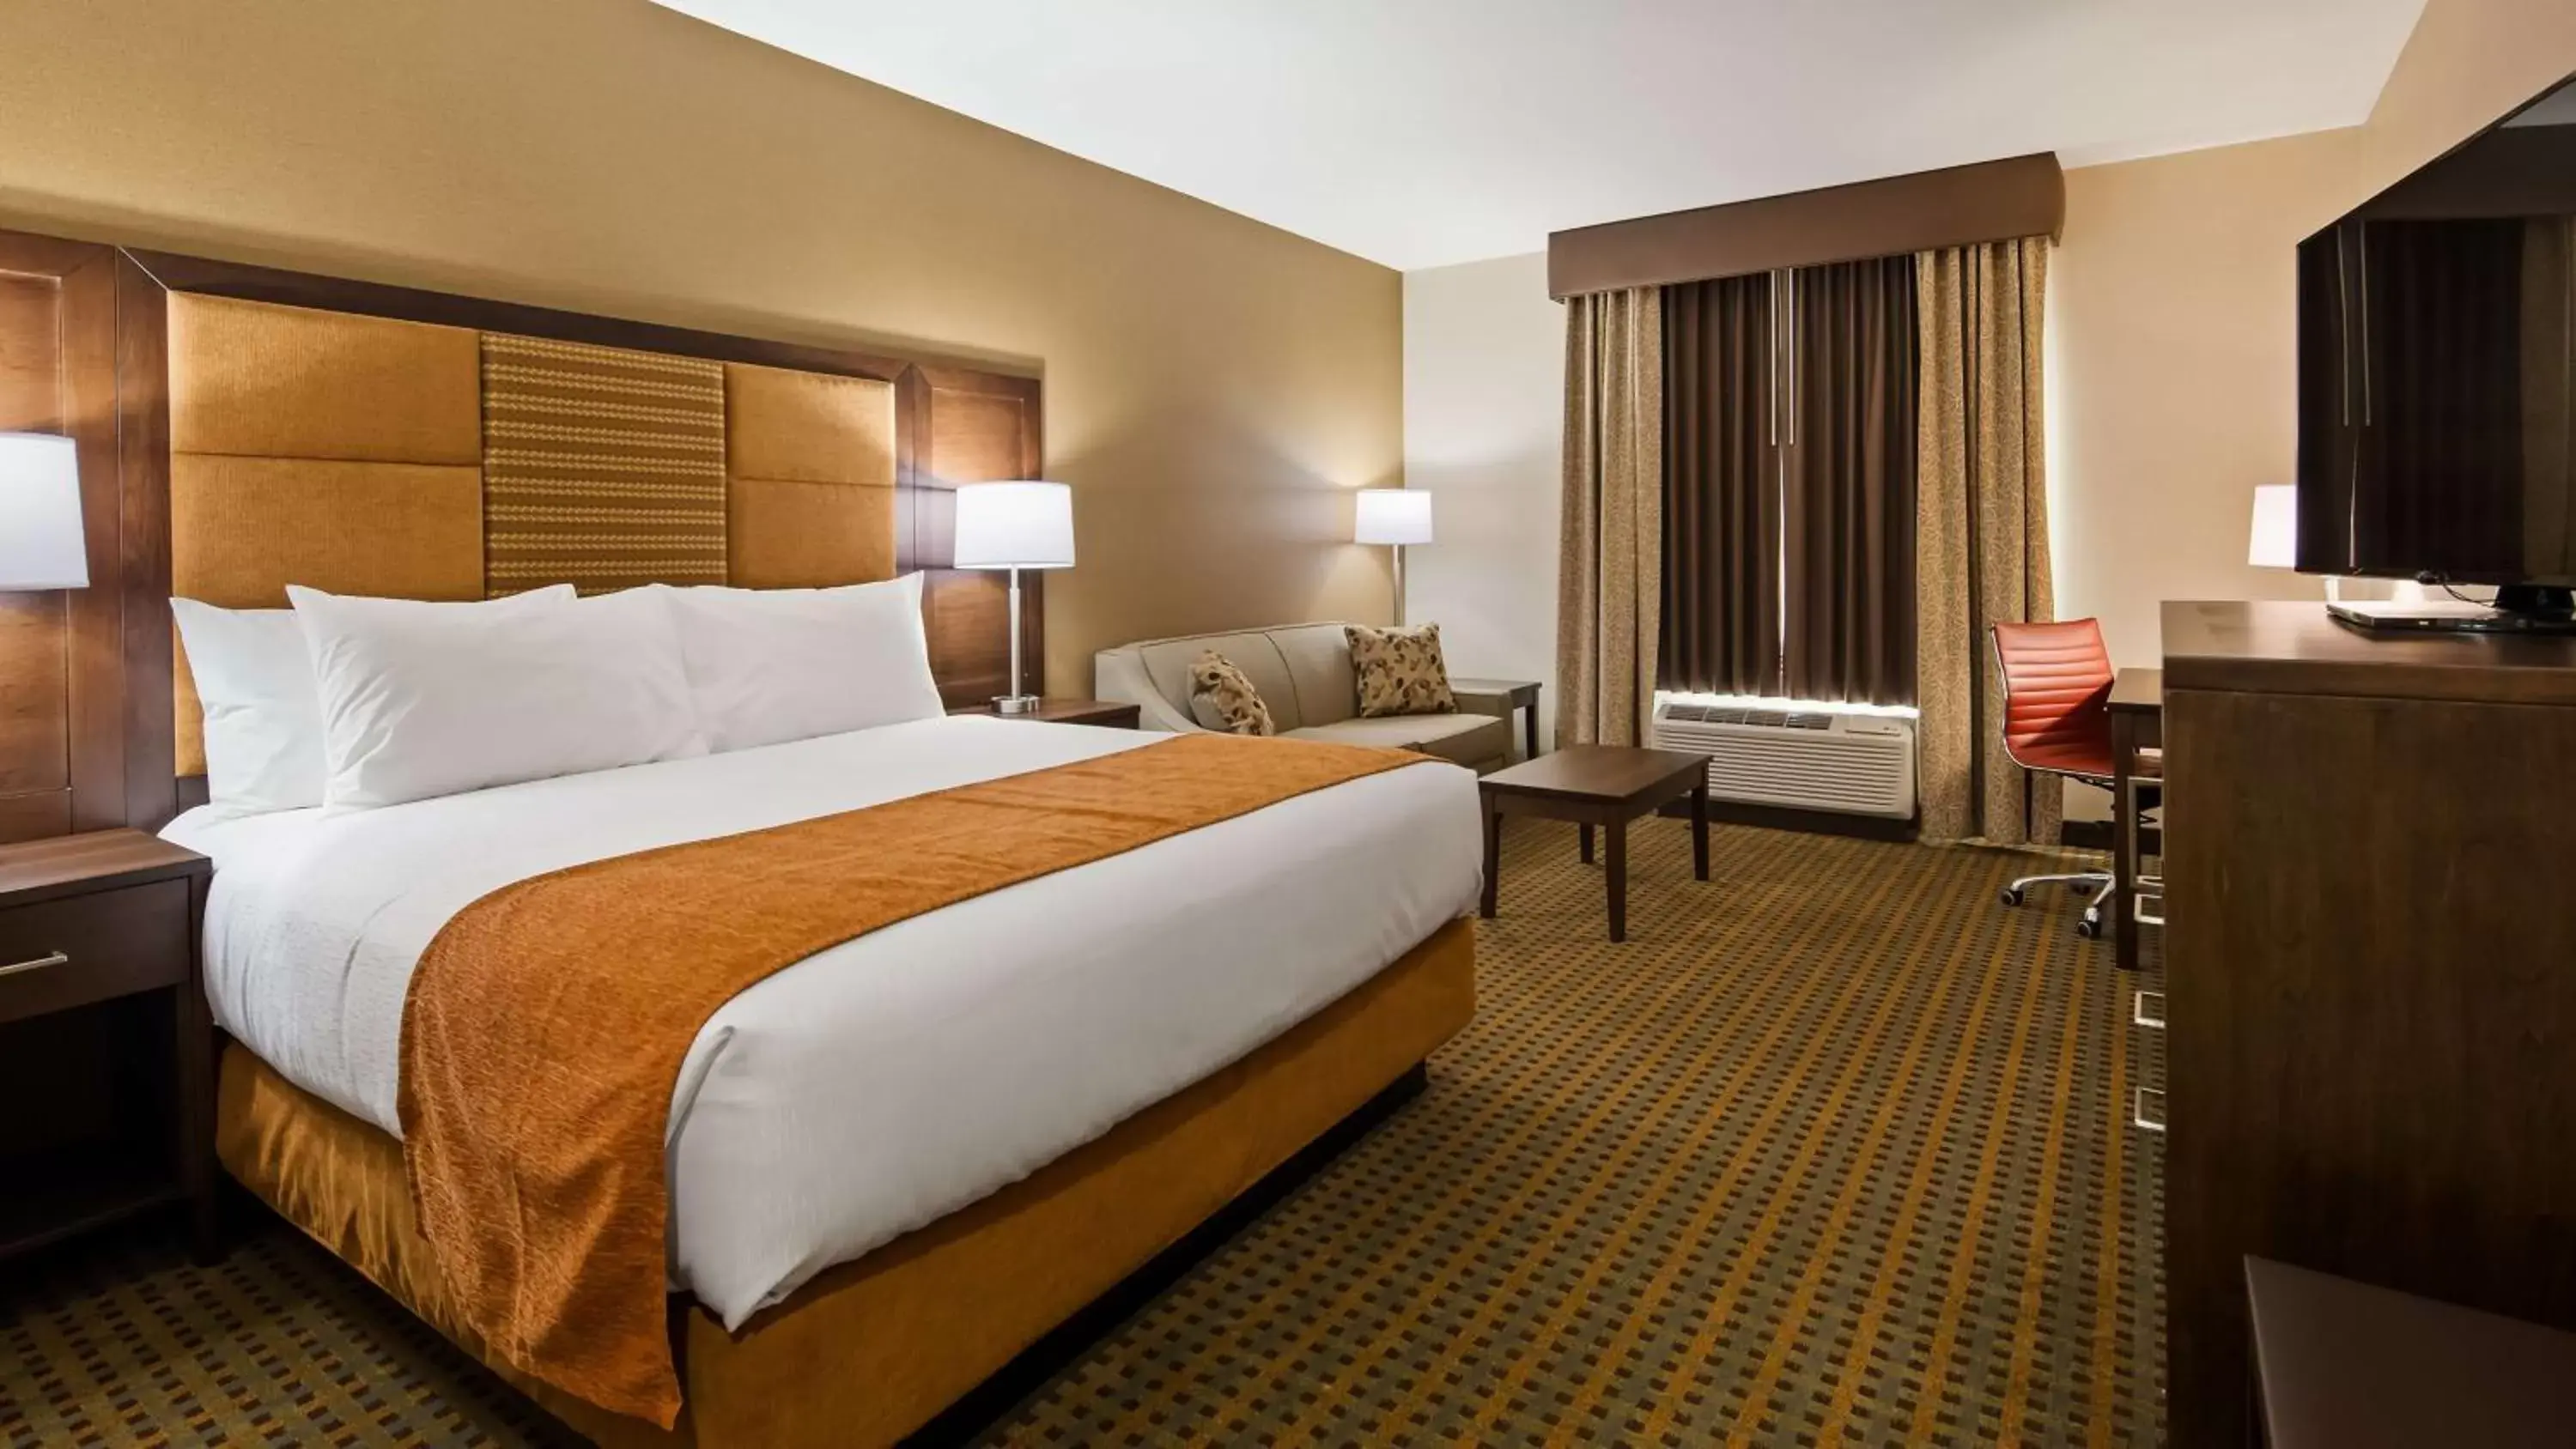 Bedroom, Bed in Best Western Plus Hinton Inn & Suites